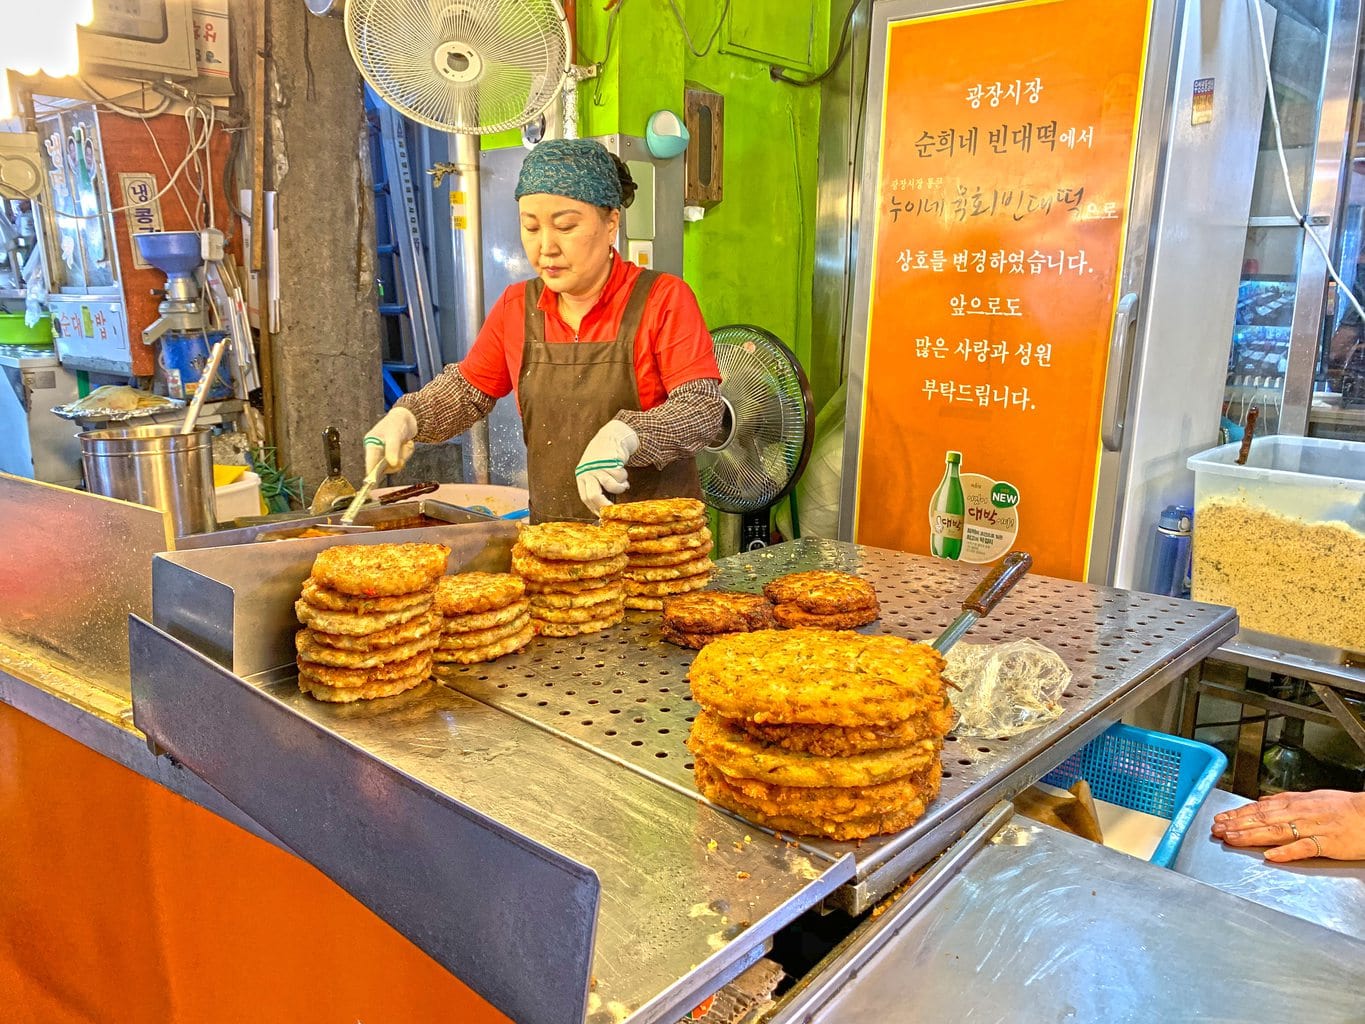 Street food at Gwangjang market